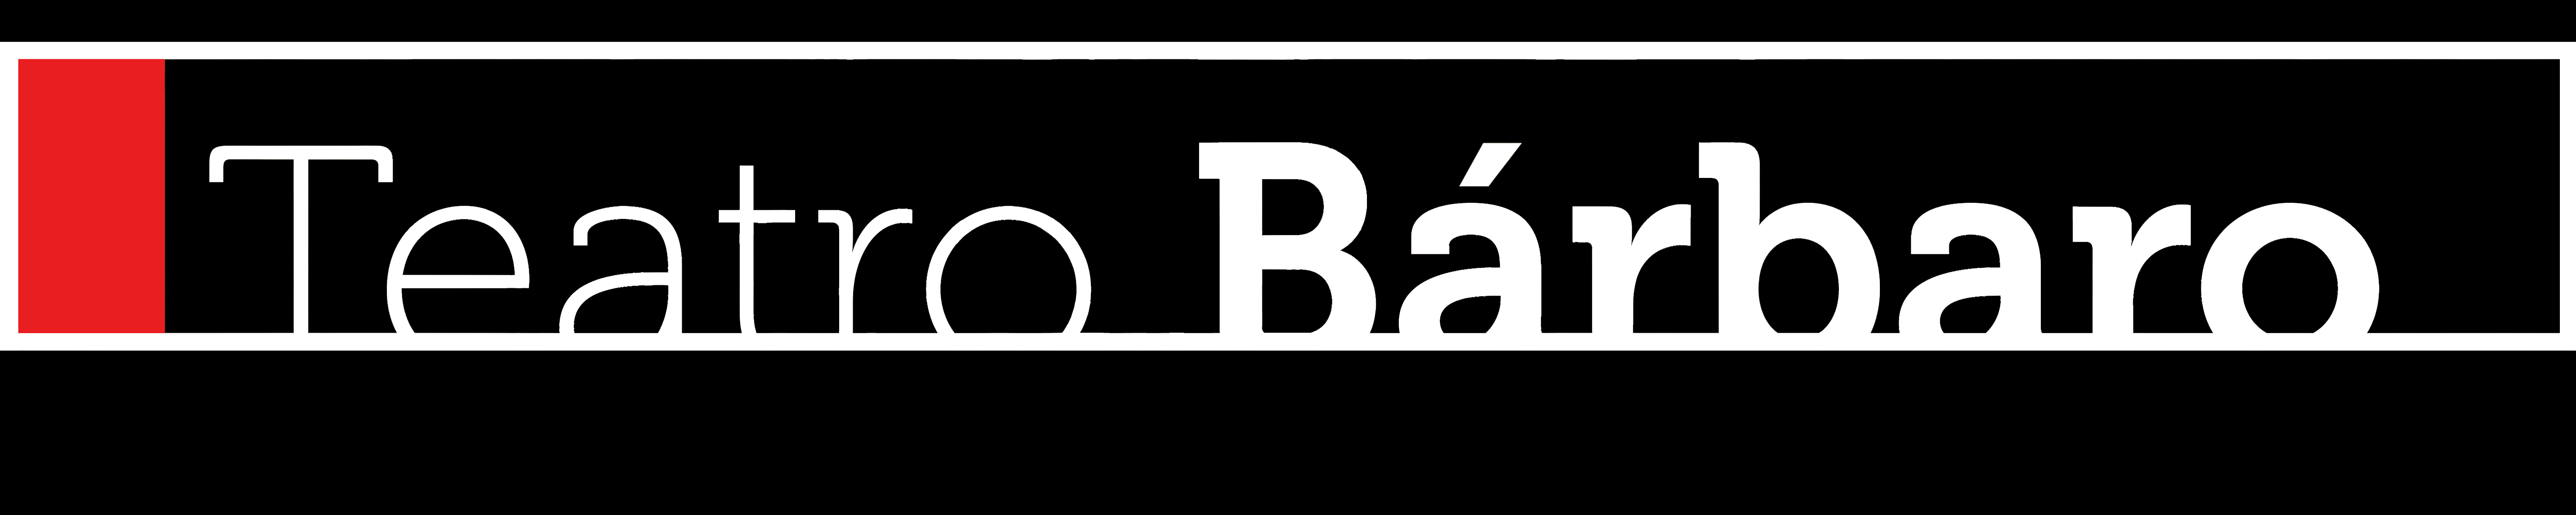 Teatro B†rbaro Logo fondo negro PNG.png